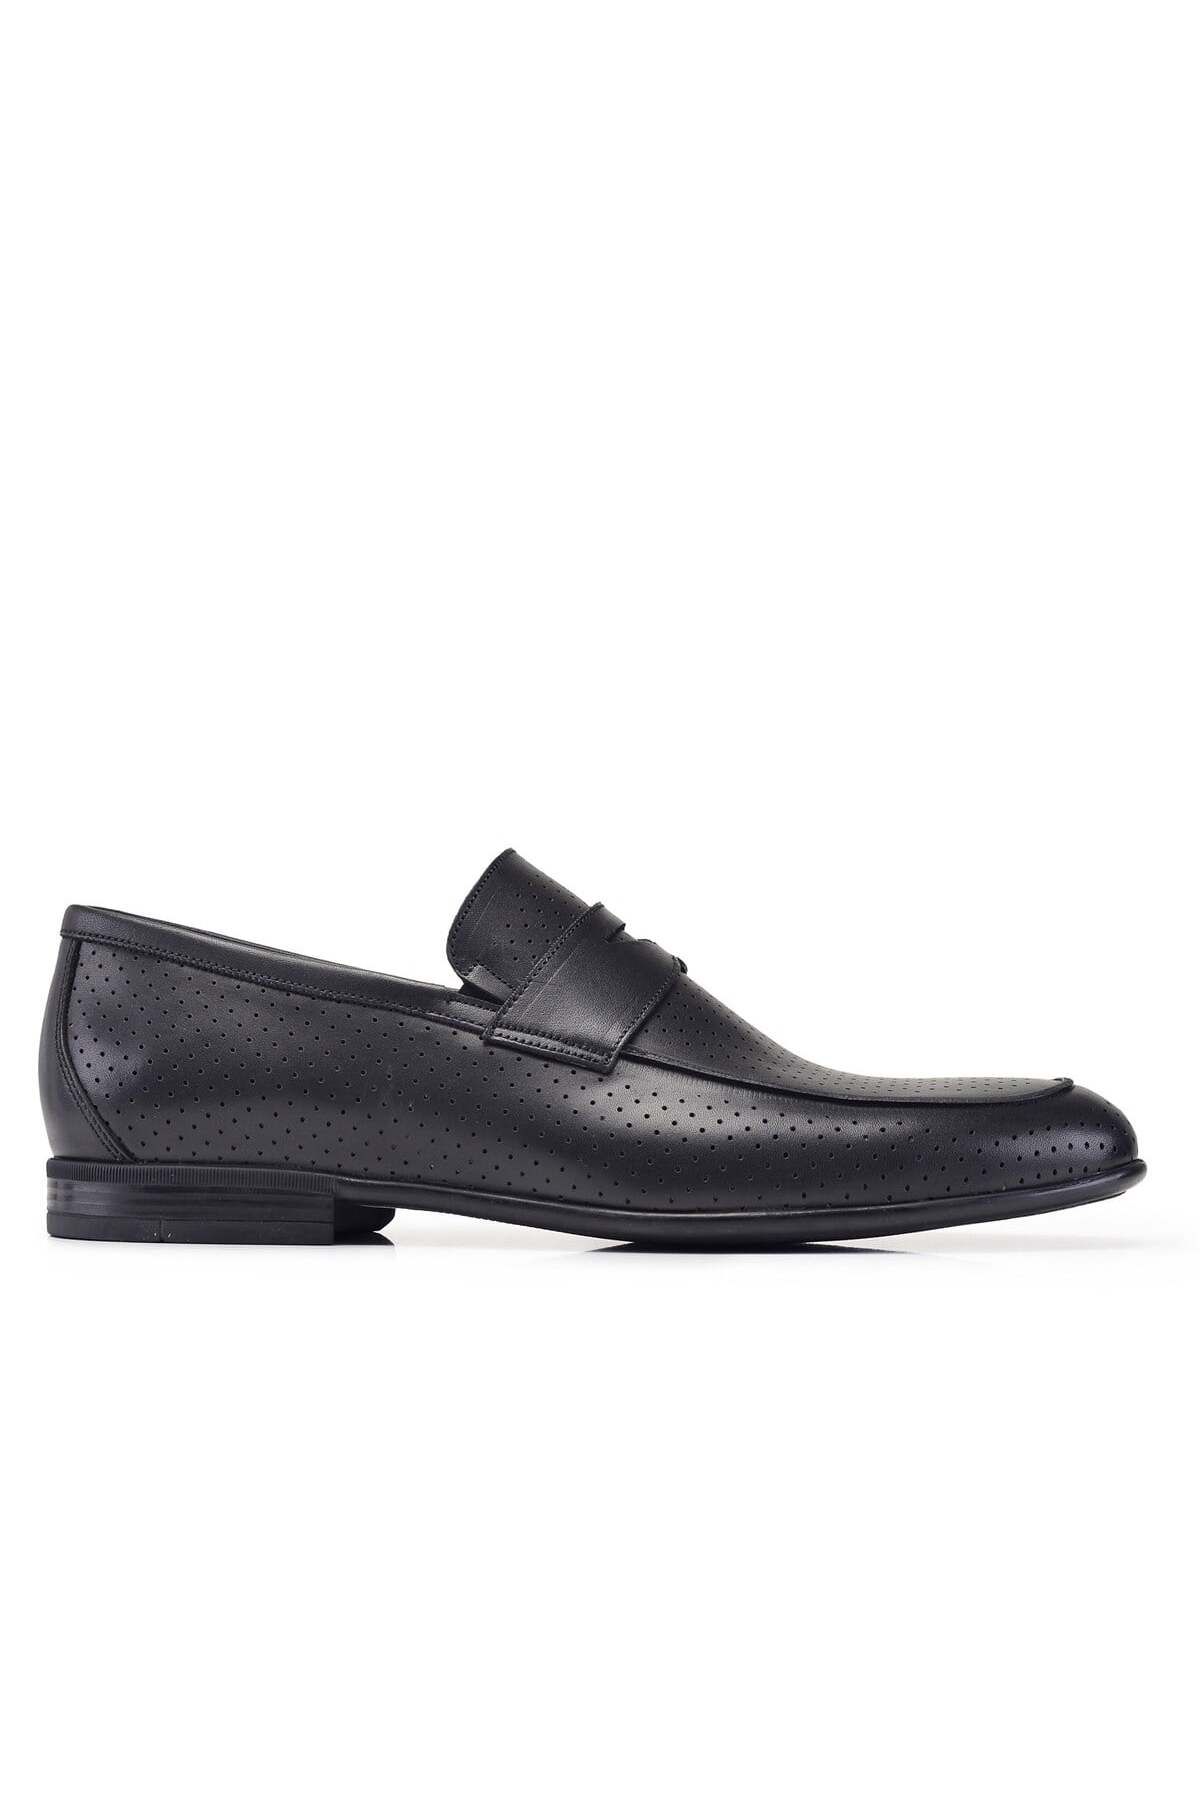 Nevzat Onay Siyah Günlük Loafer Erkek Ayakkabı -12181-